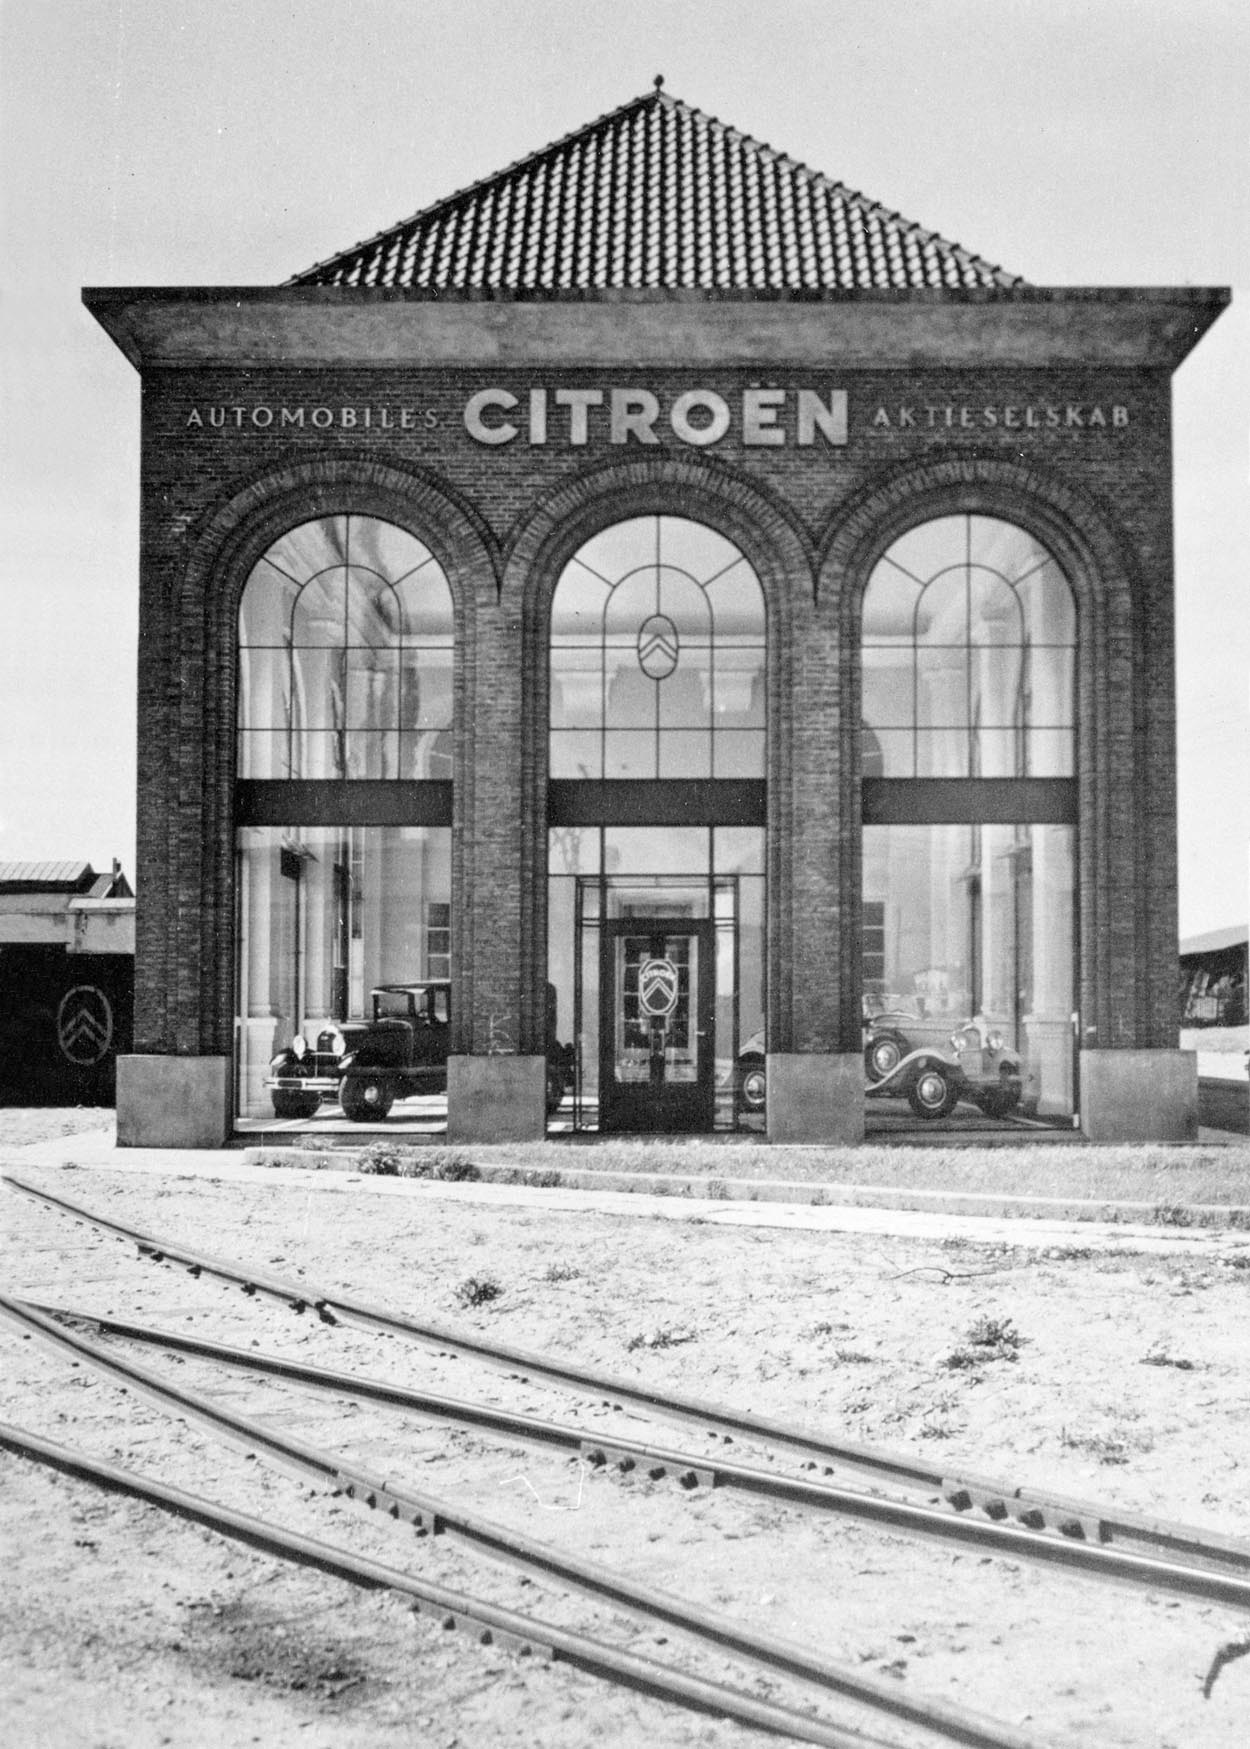 Citroën Danmarks historiske administrationsbygning blev opført i 1928, og i 2003 rykkede mærket atter ind her. Men snart er det slut. (Foto: Citroën)